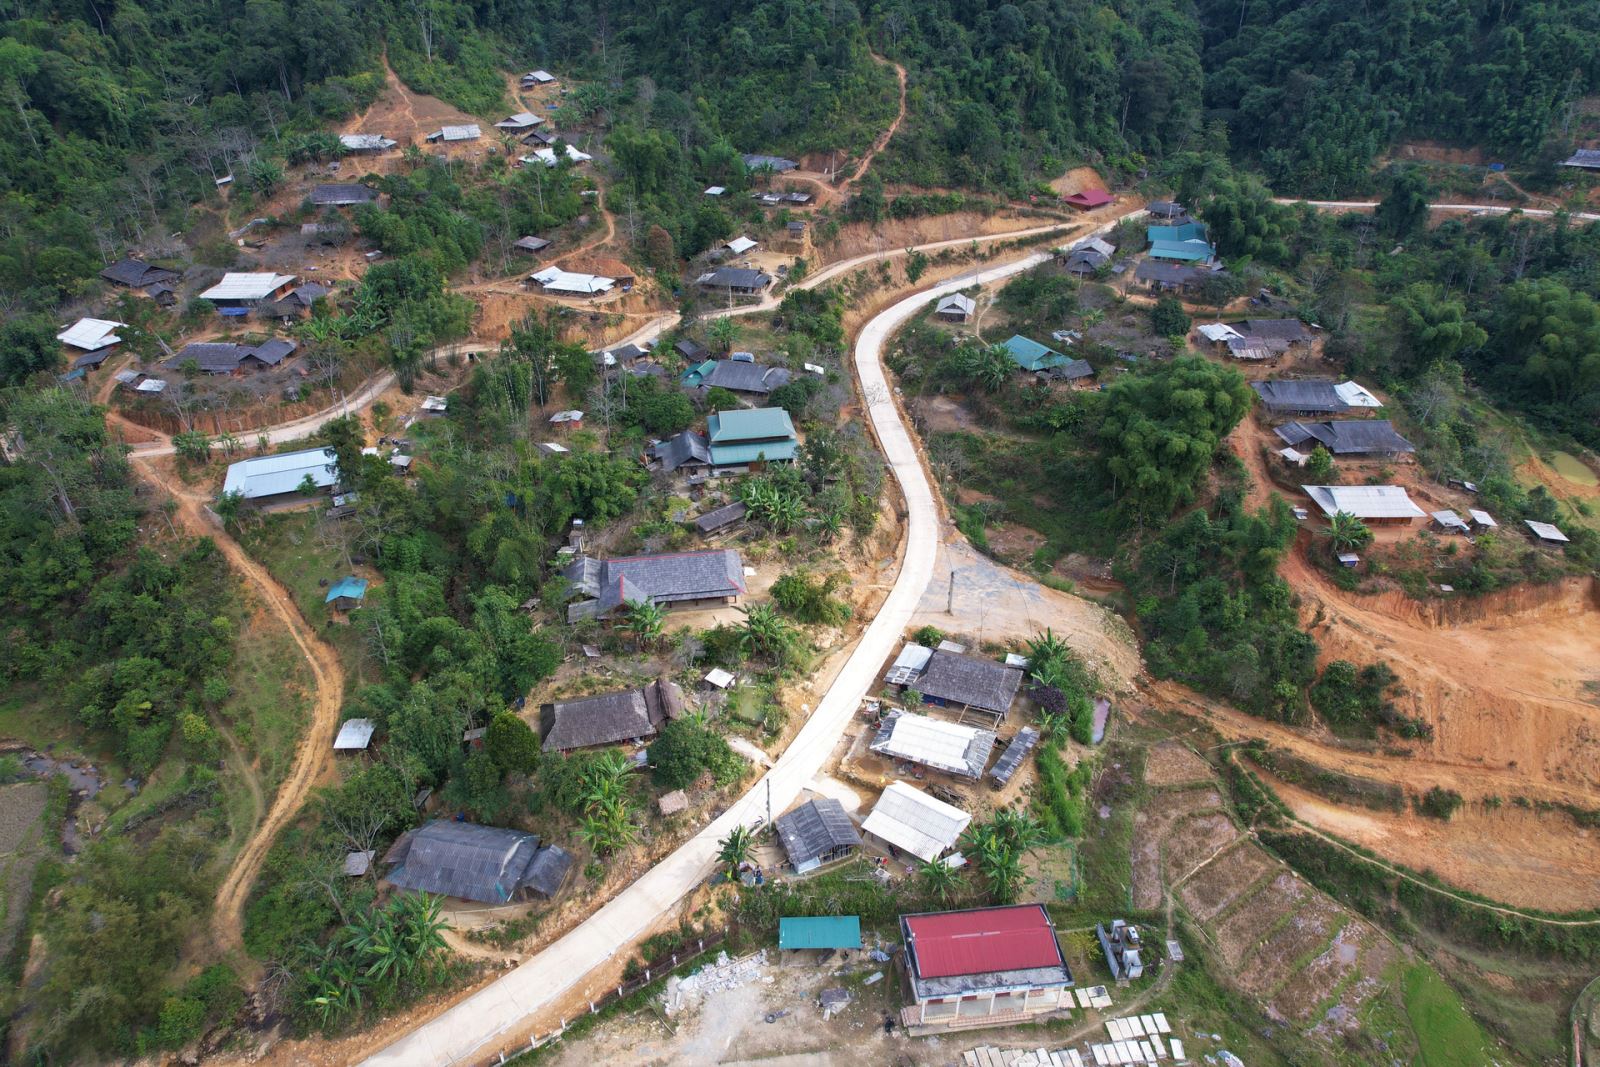 Bản Ché Lầu (xã Na Mèo, huyện Quan Sơn) nơi còn nhiều hộ nghèo cần được hỗ trợ nhà ở